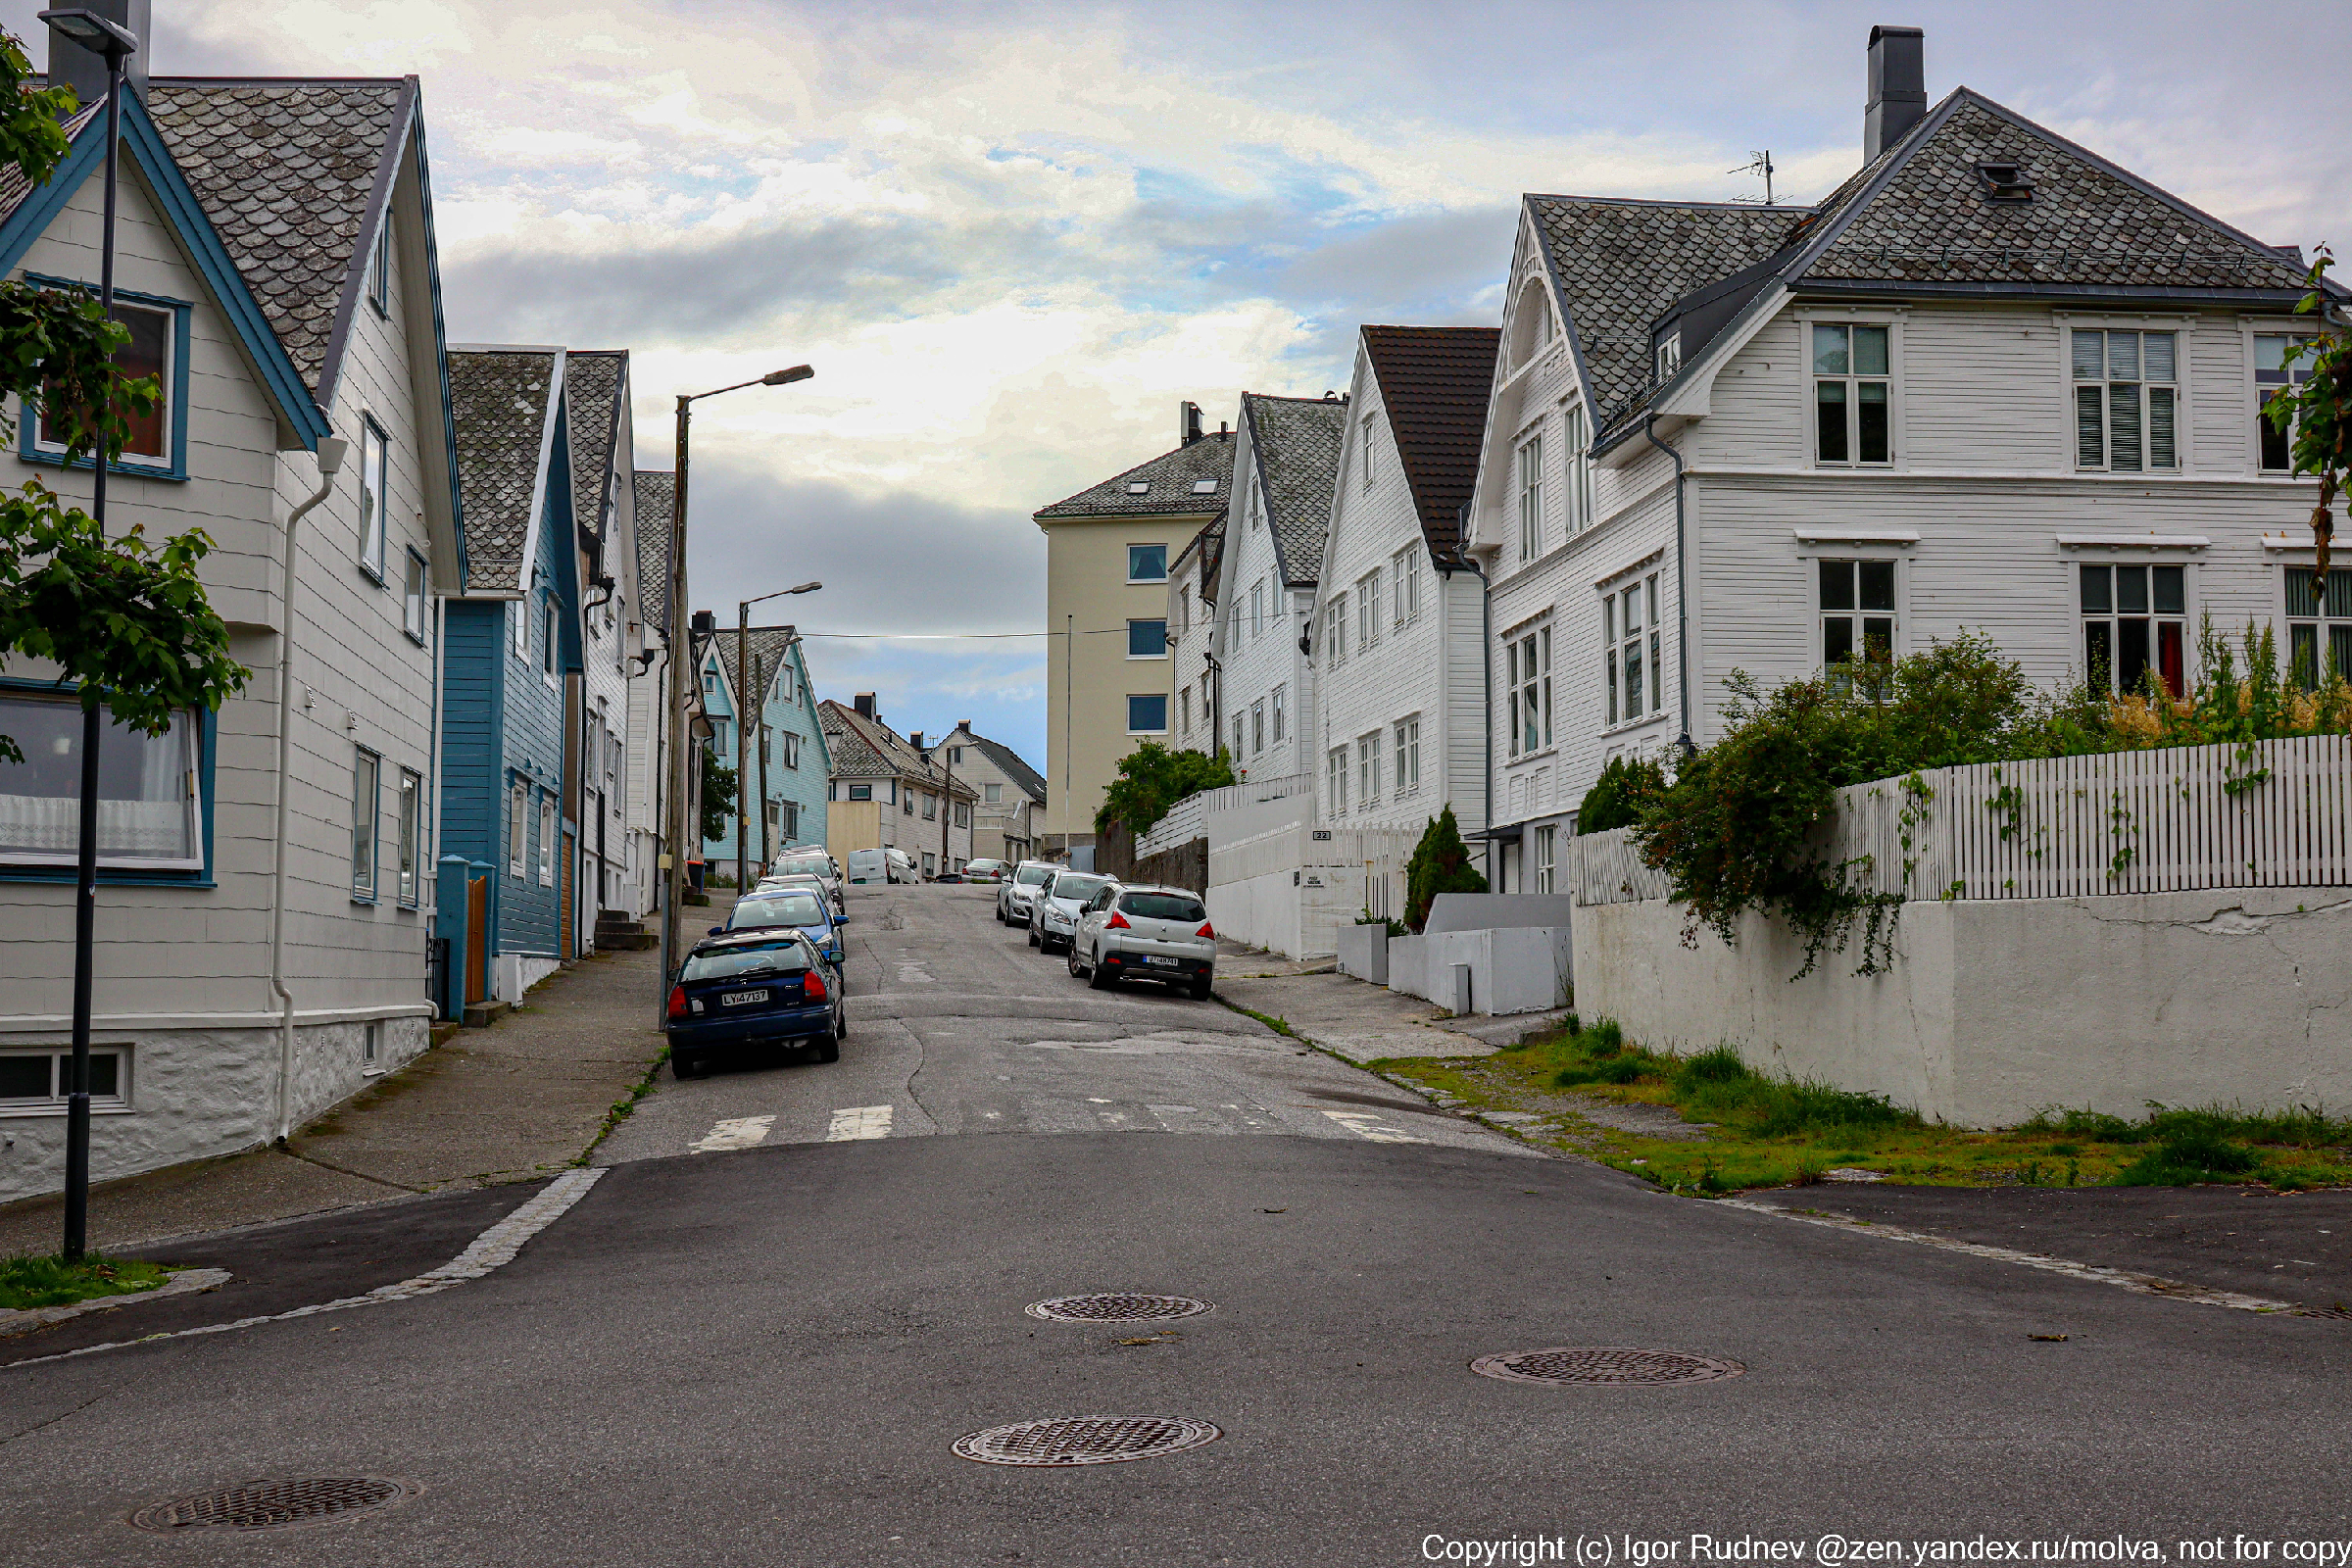 Сколько стоит недвижимость в самой дорогой стране мира – в Норвегии? Понял, почему многие всю жизнь живут в съемных домах0